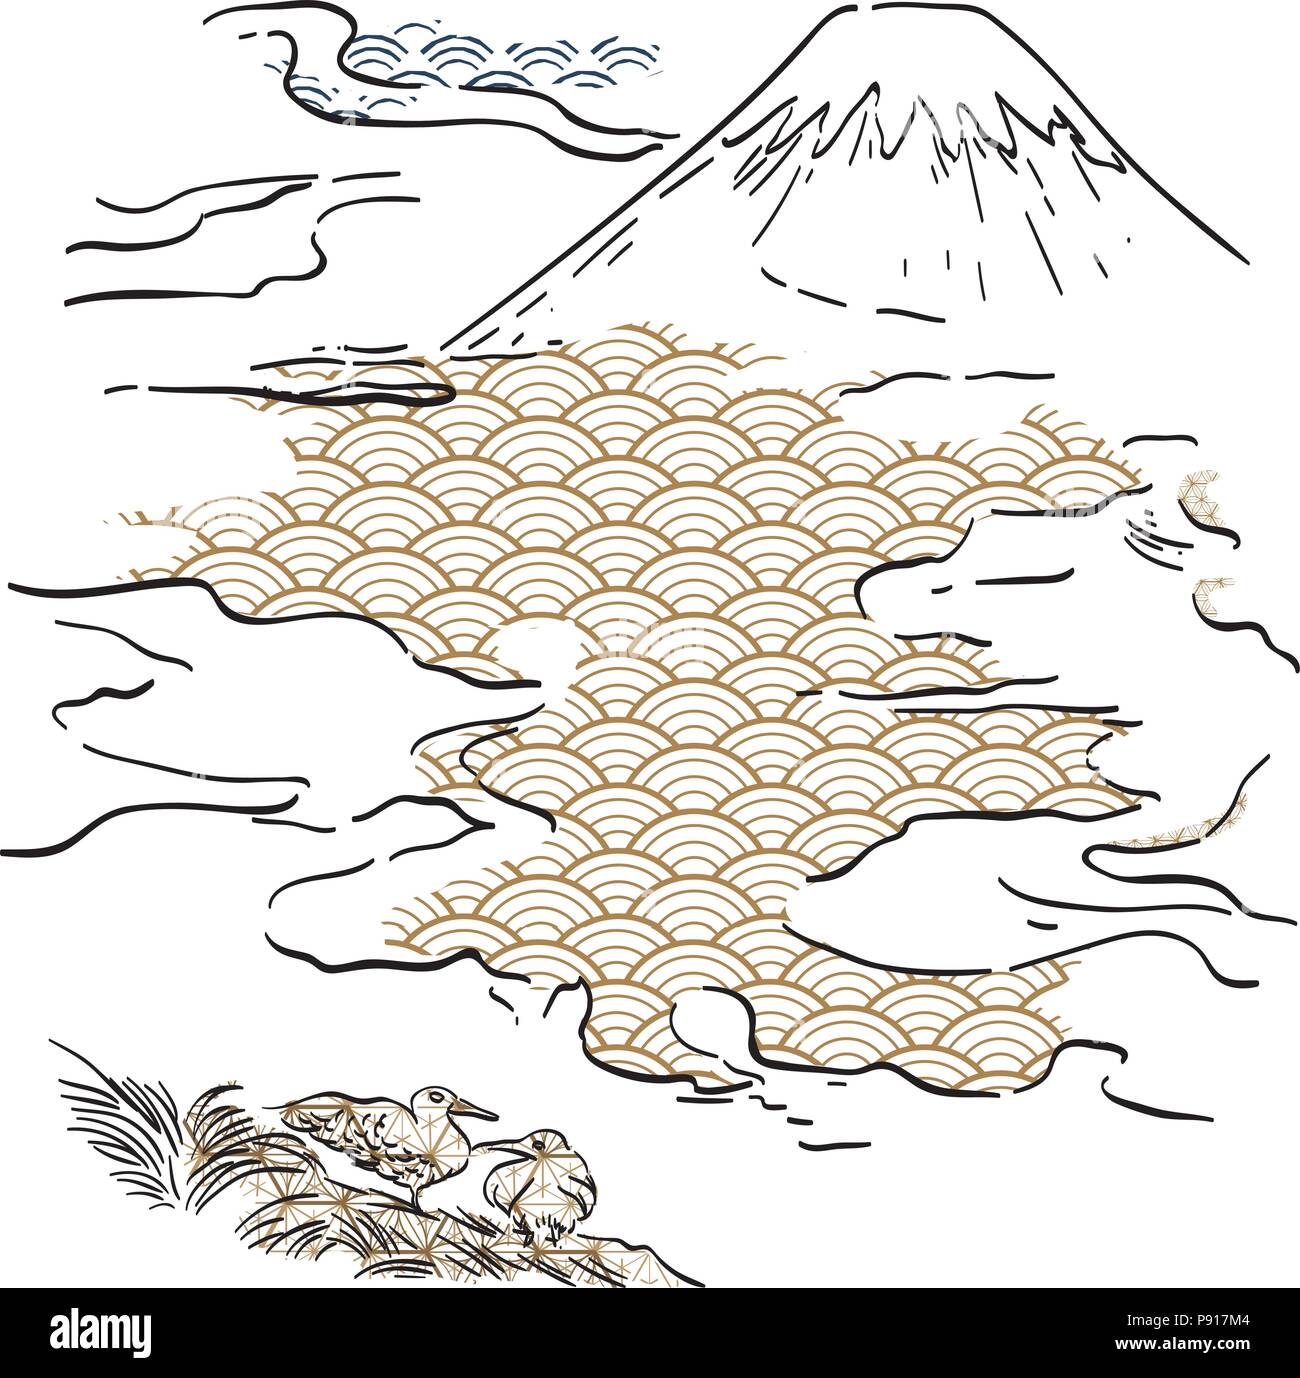 Fuji Berg Hand gezeichnet Vektor mit japanischen Muster Hintergrund. Schwarz und gold Pinselstrich Tier- und wave Elementen. Stock Vektor